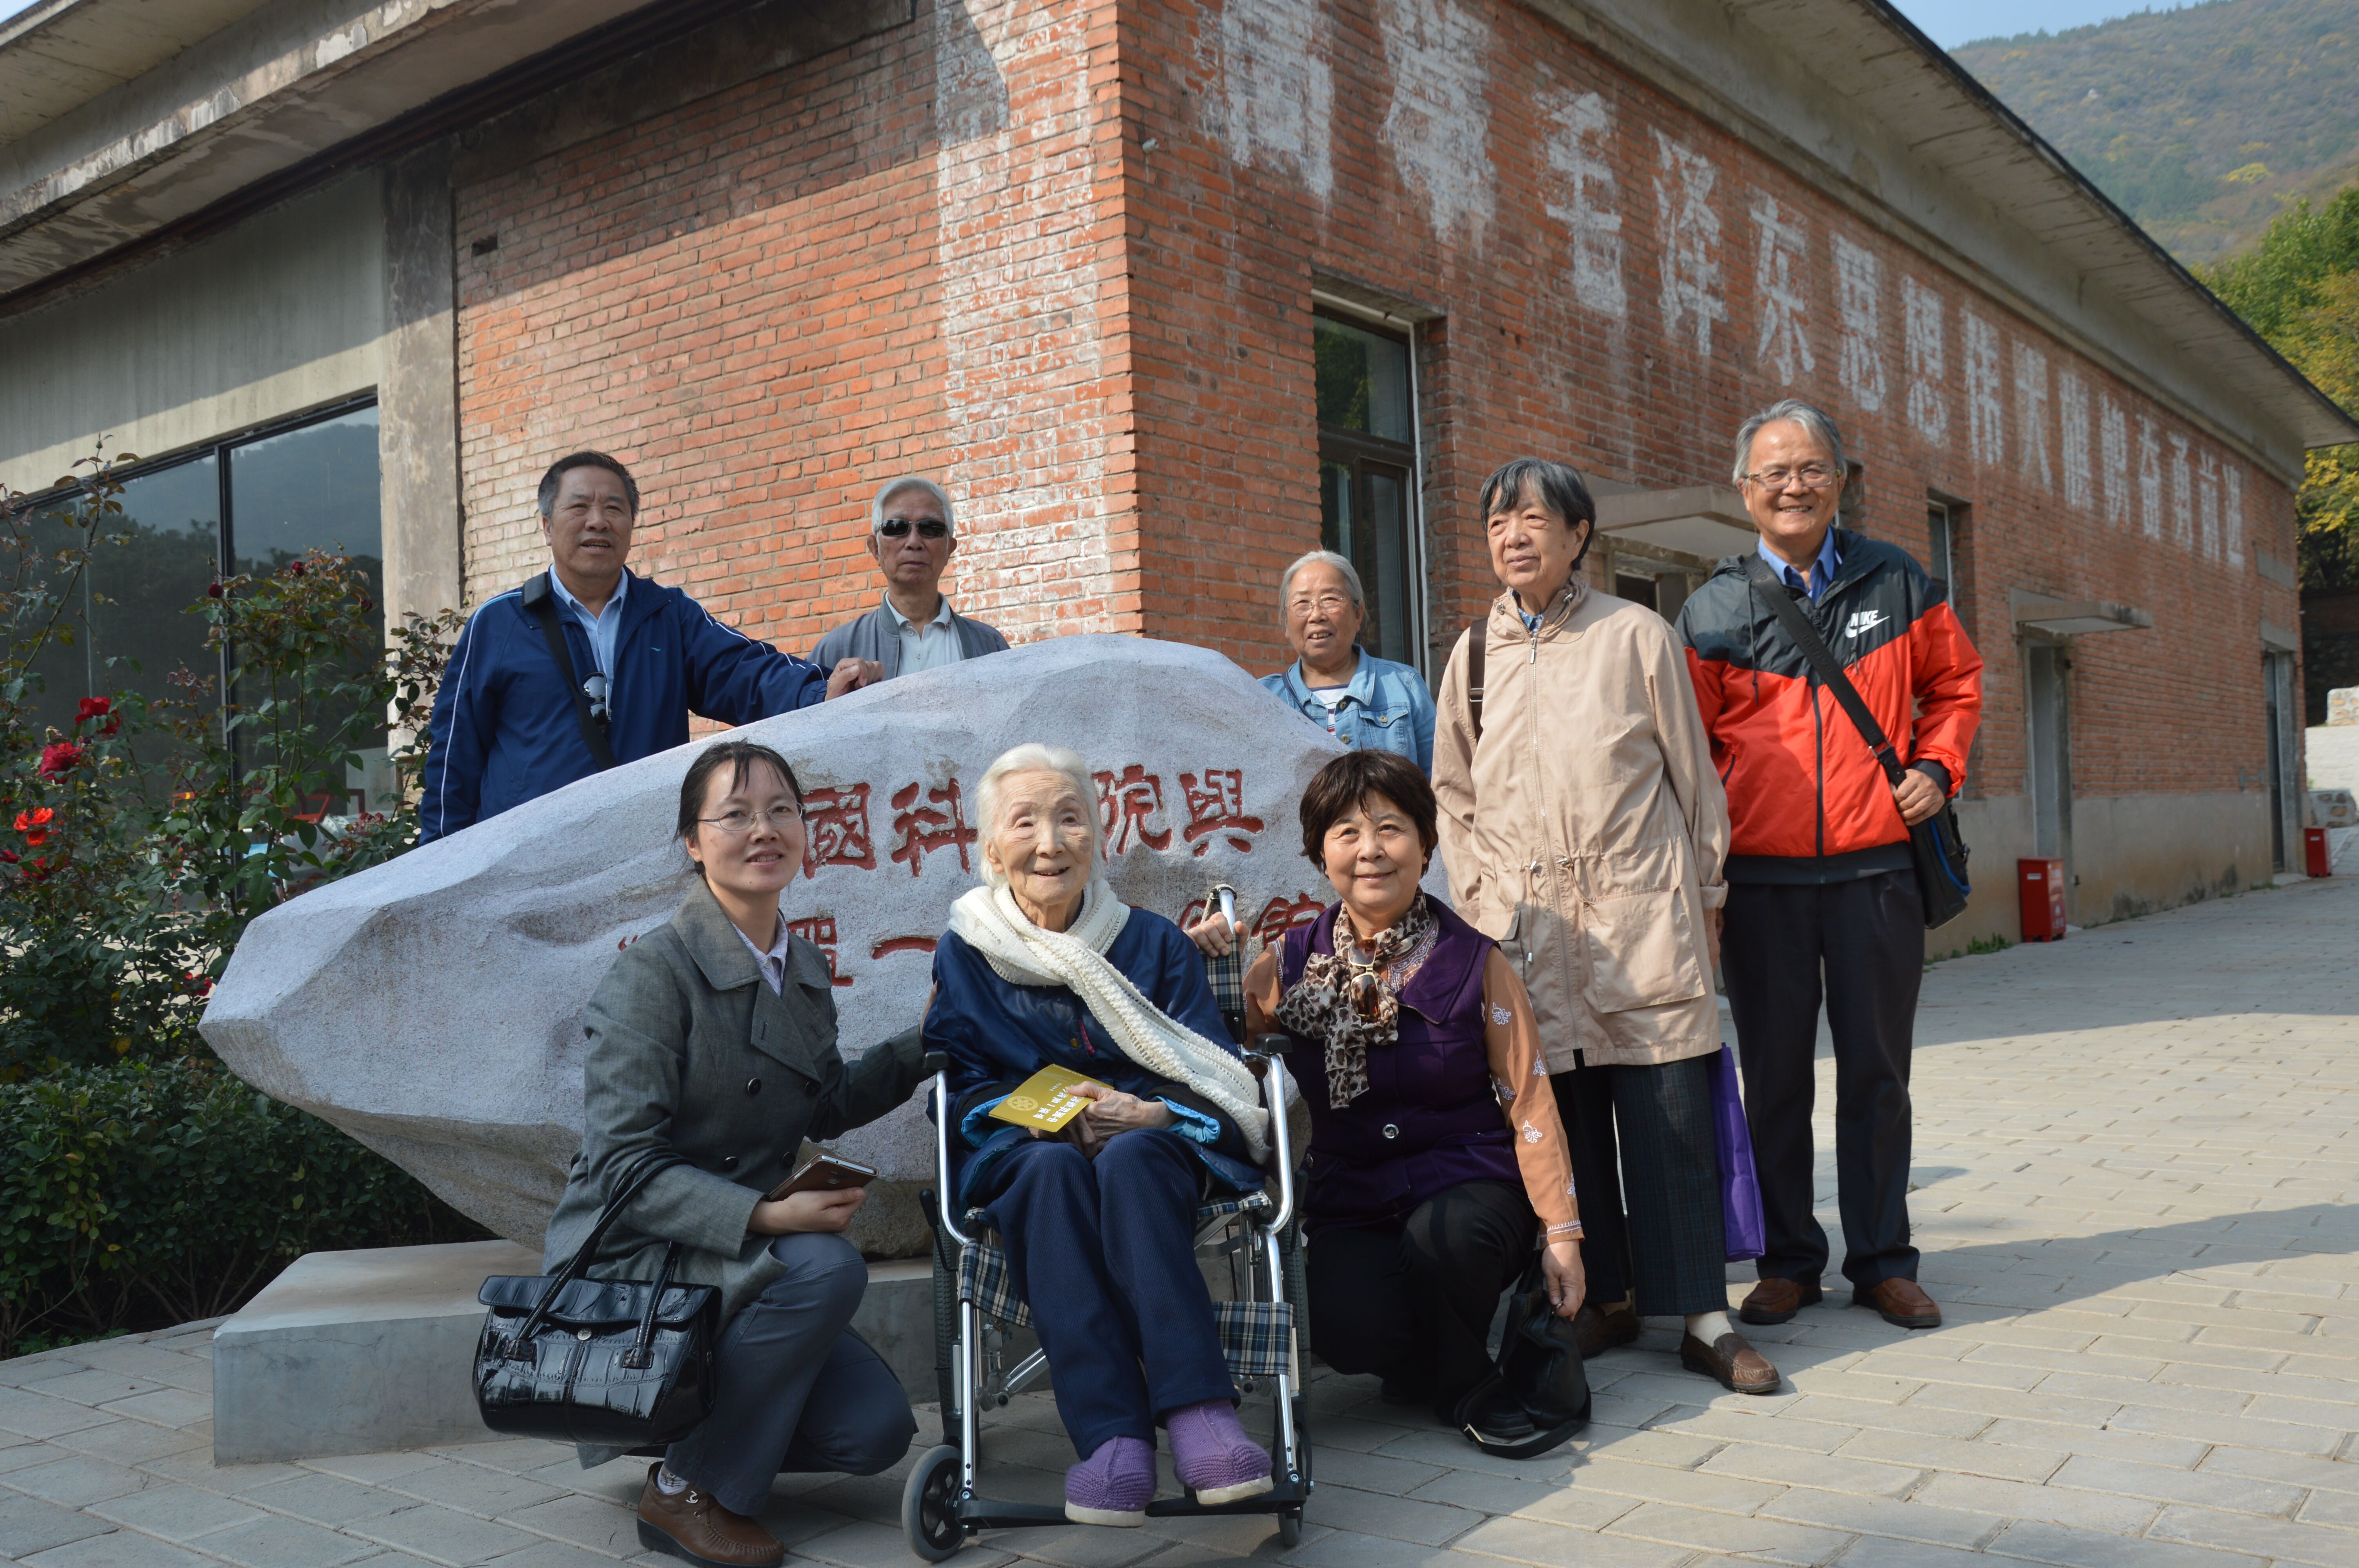 2015年10月16日李佩先生参观中国科学院与两弹一星纪念馆2